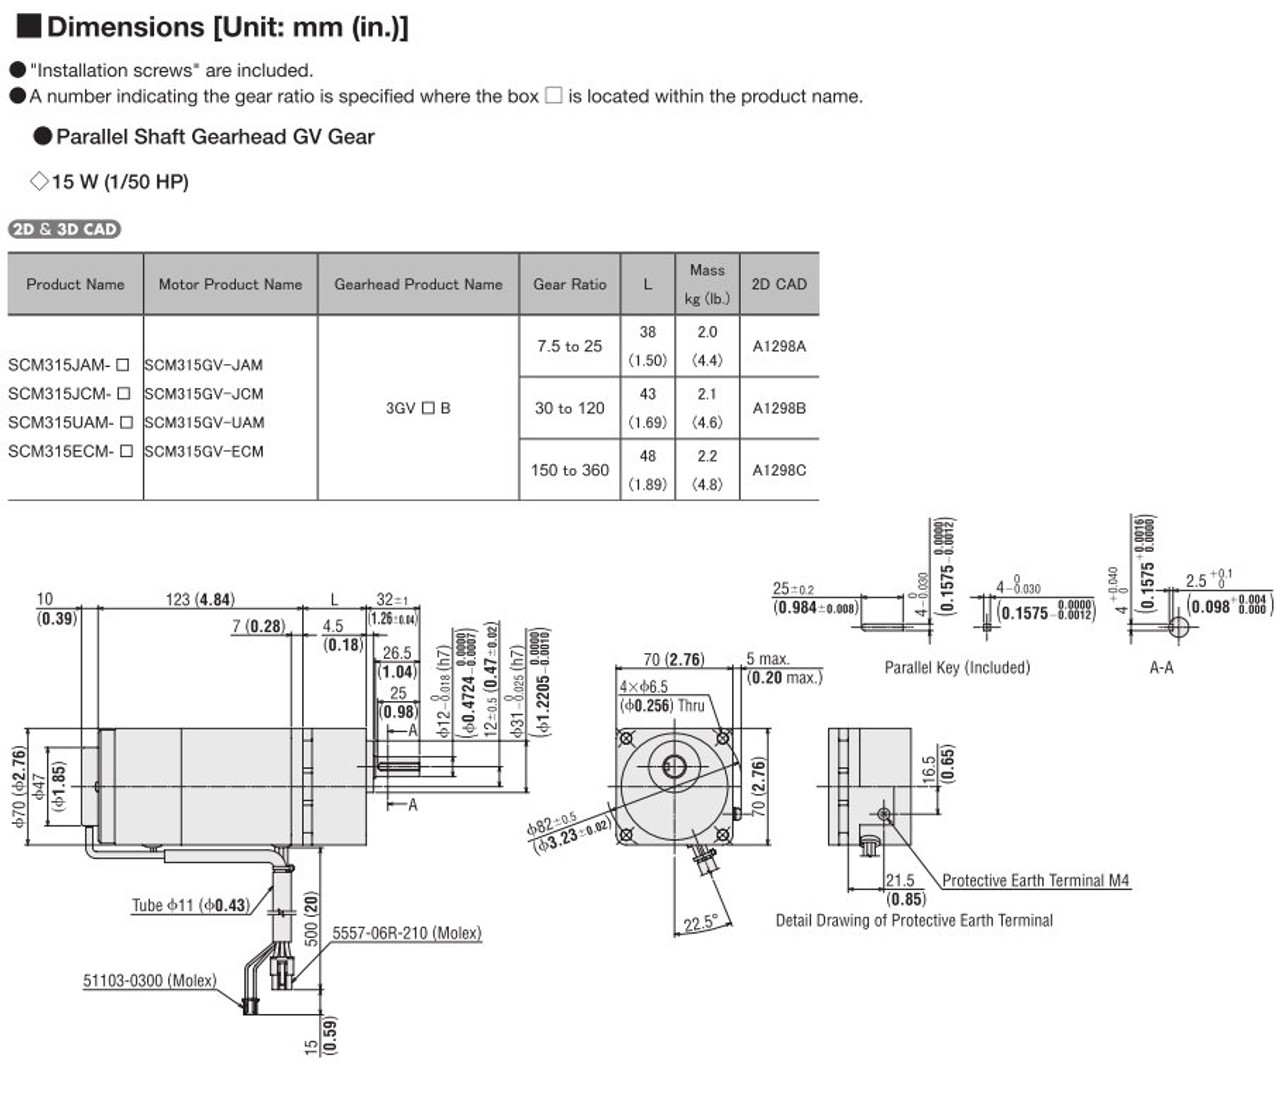 SCM315UAM-150 - Dimensions